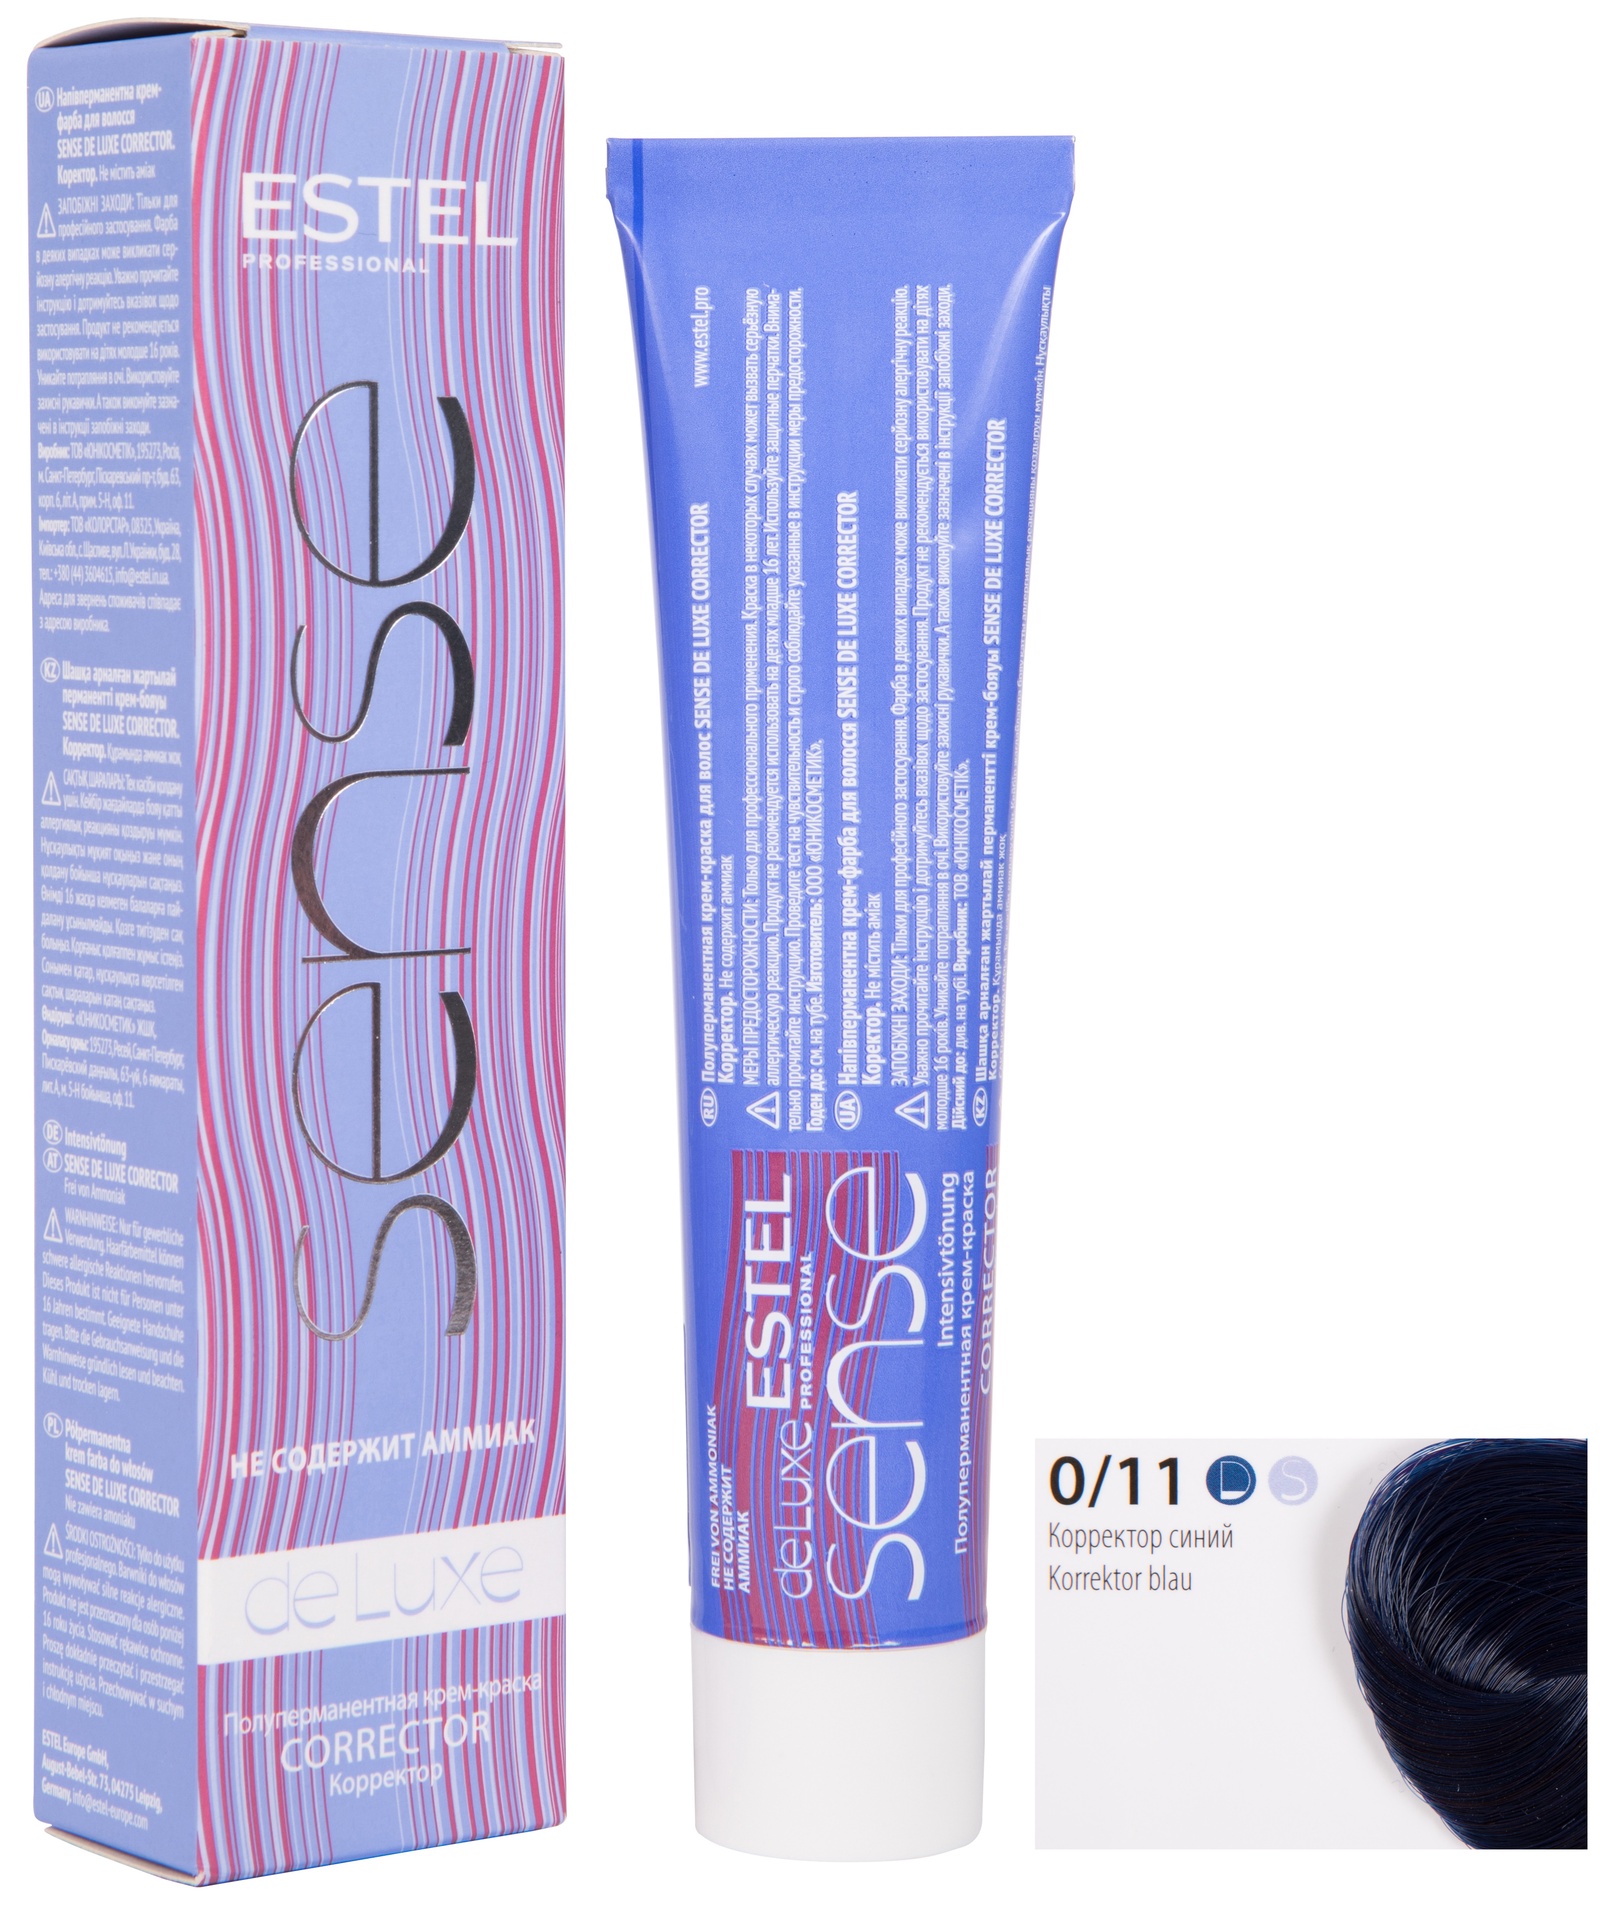 Краска для волос ESTEL PROFESSIONAL 0/11 крем-краска SENSE DE LUXE CORRECTOR для окрашивания волос, синий 60 мл